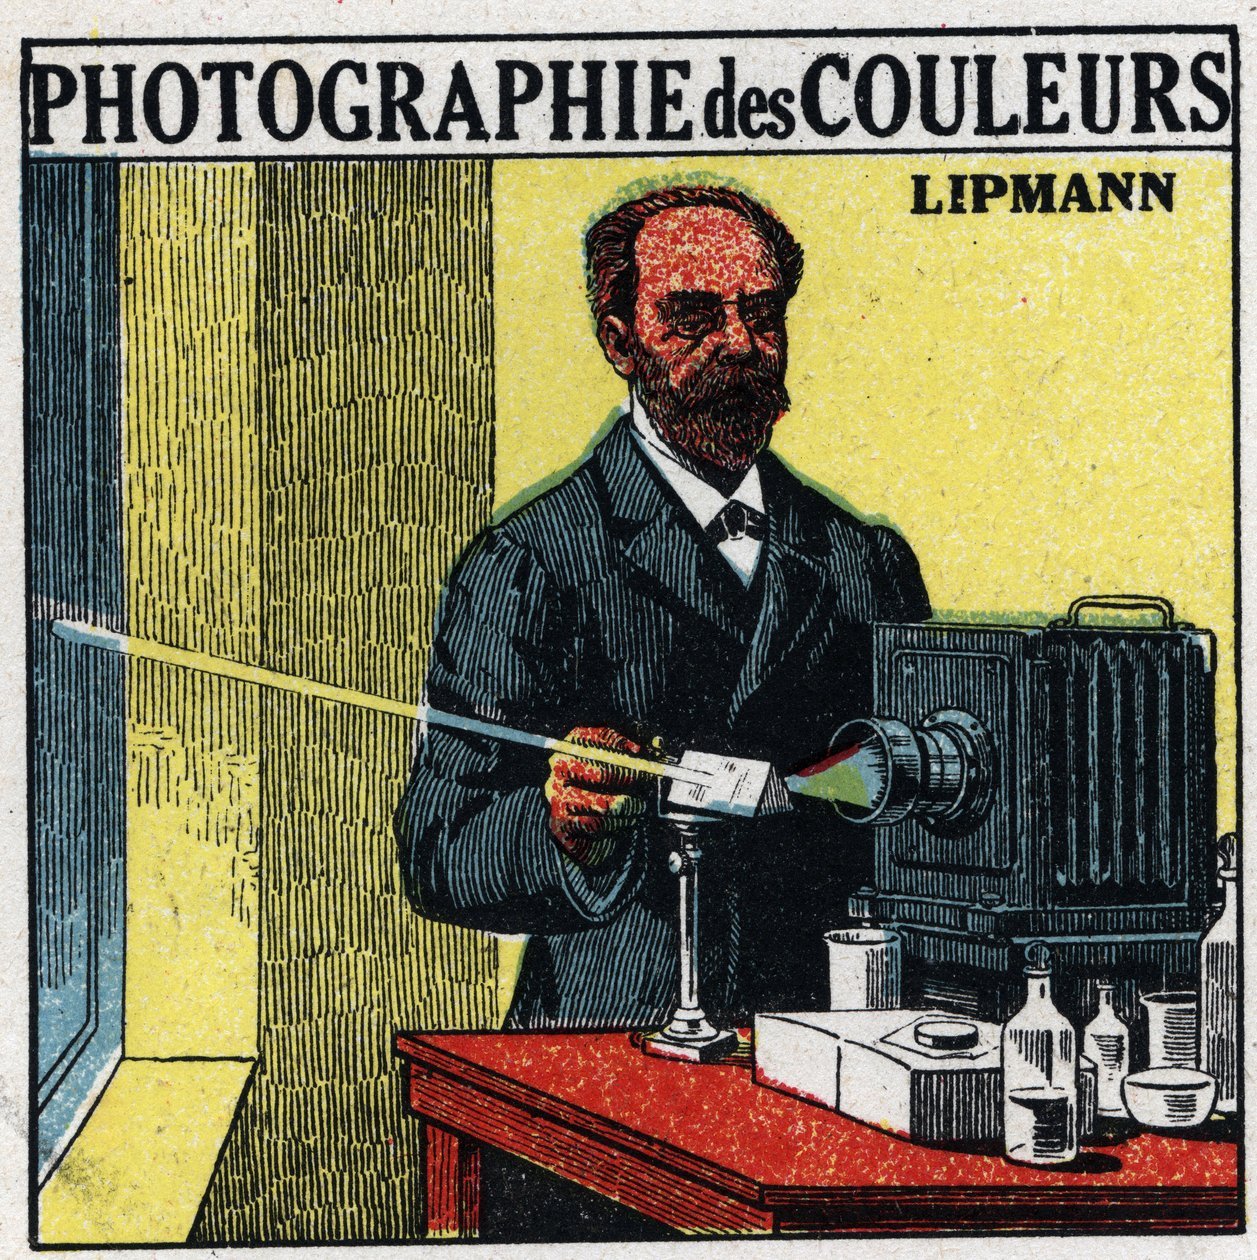 غابرييل ليبمان .. الفيزيائي الفرنسي الذي أنتج أول صور فوتوغرافية ملونة